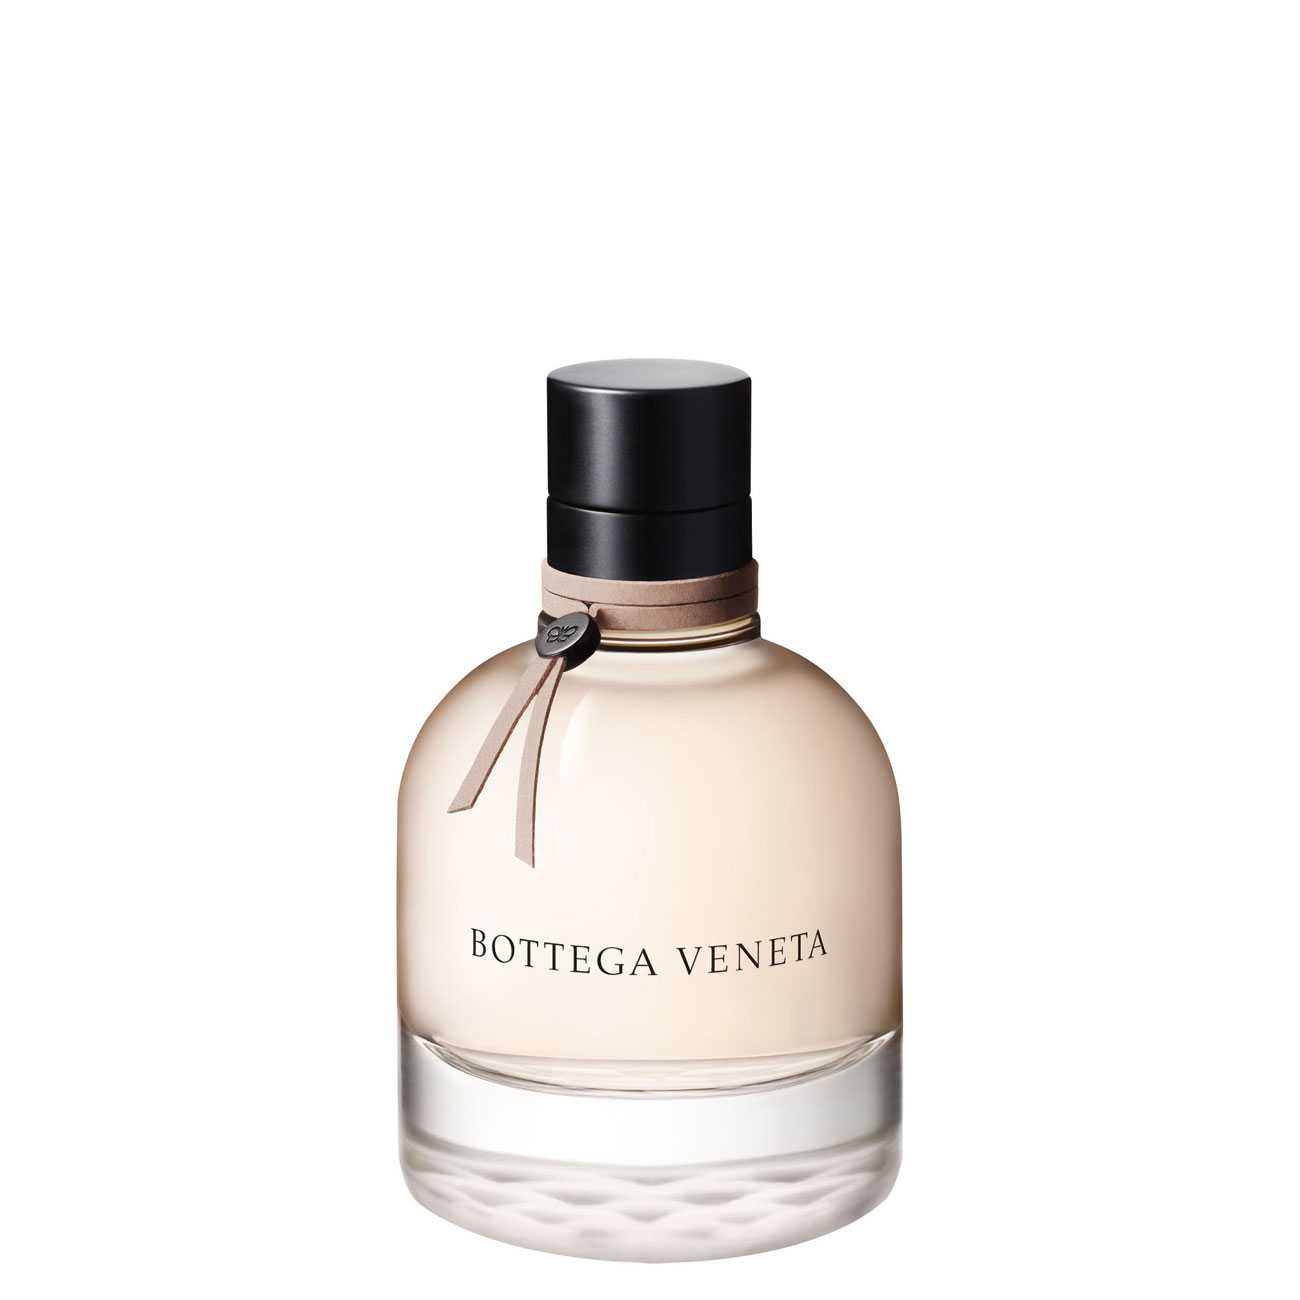 Apa de Parfum Bottega Veneta BOTTEGA VENETA 50ml cu comanda online